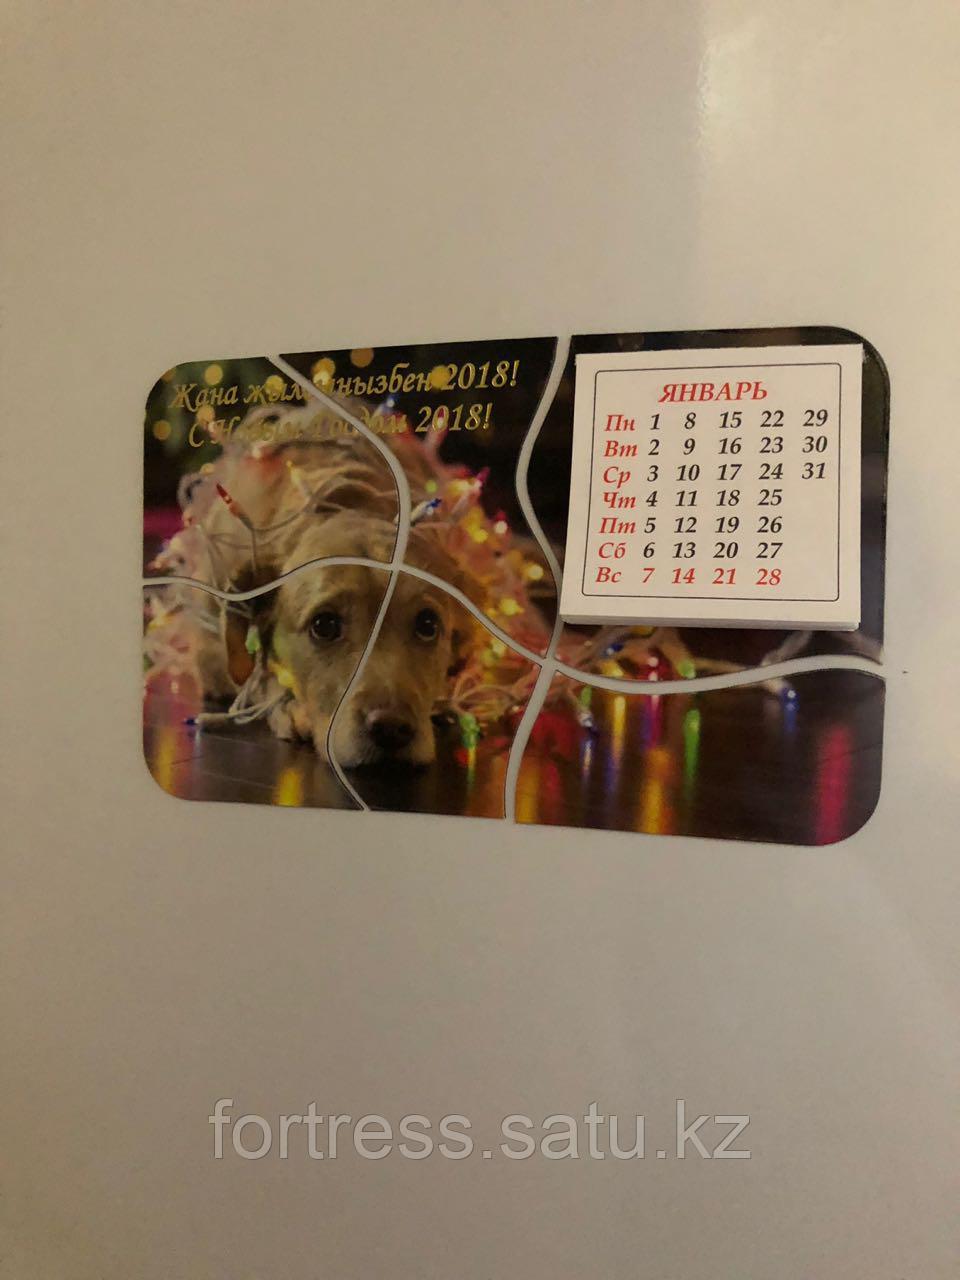 Магнит на холодильник с календариком на 2018г в виде пазла